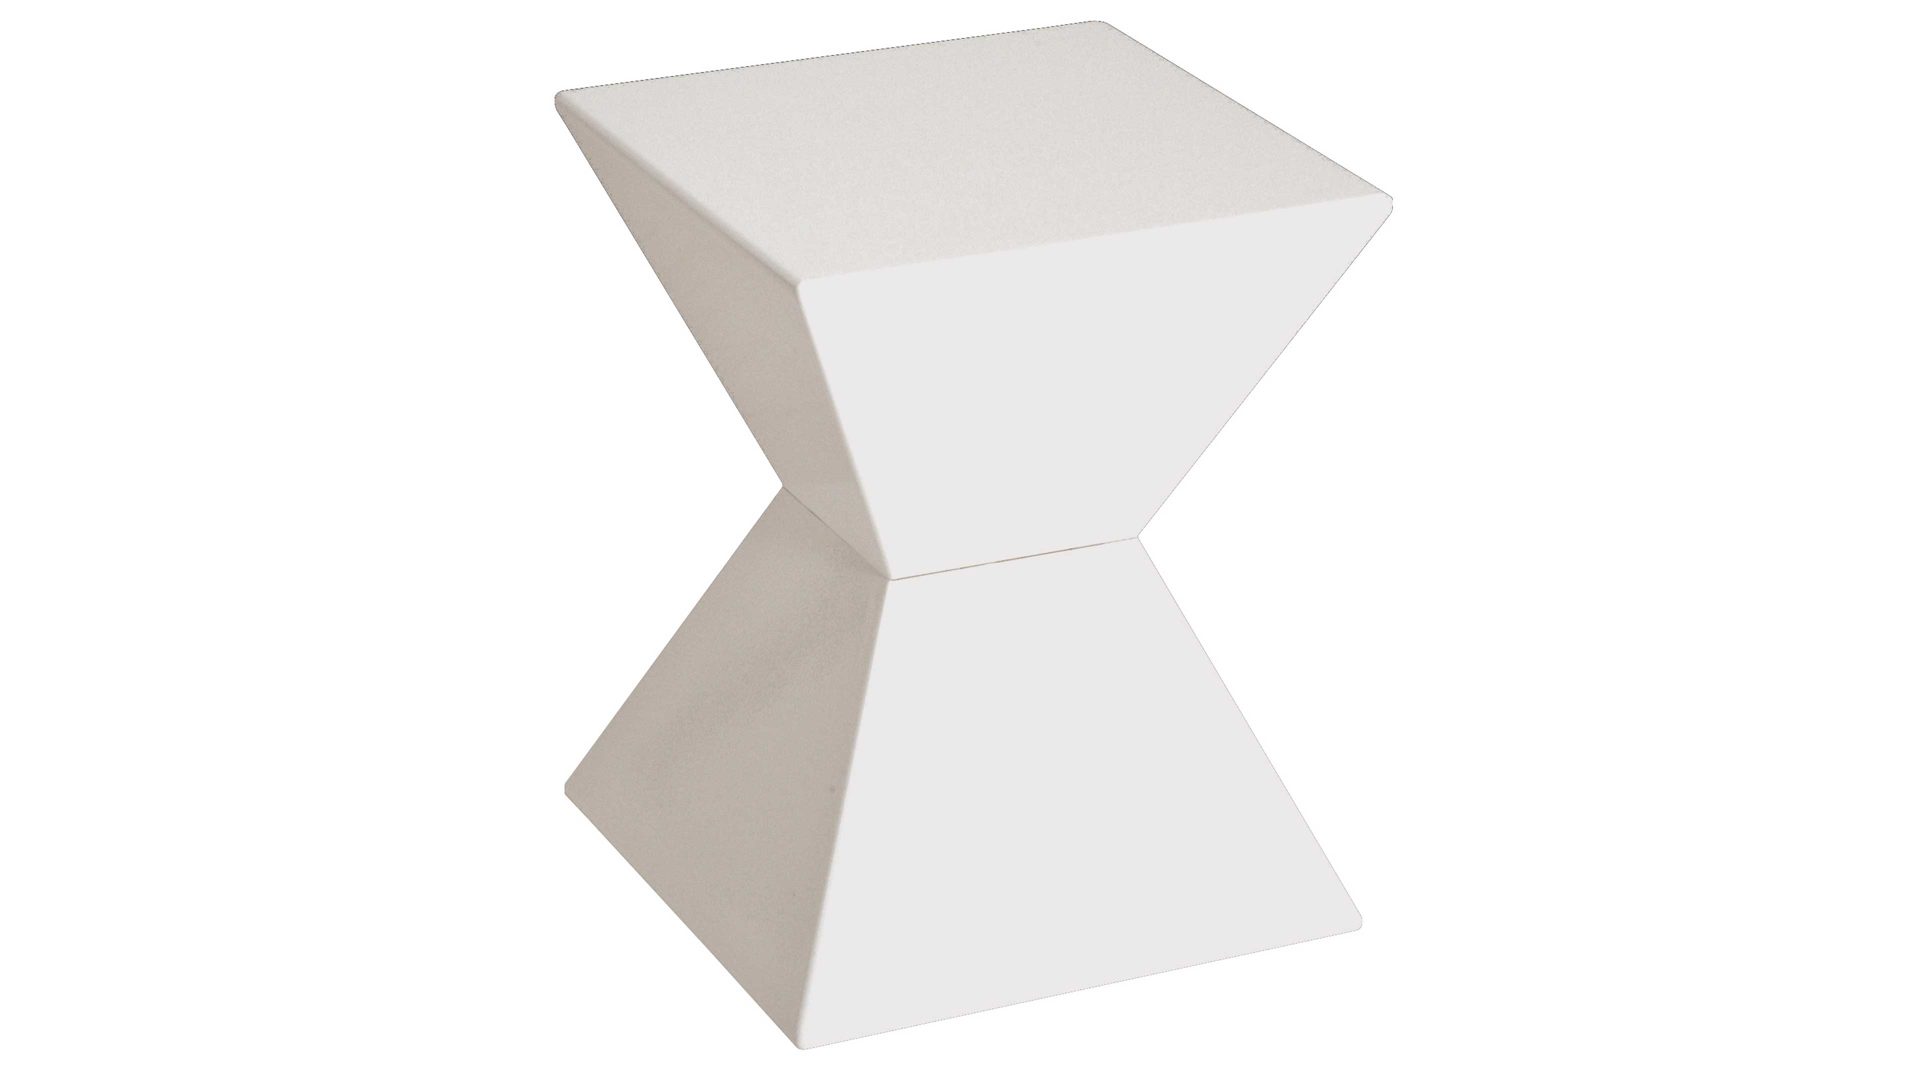 Beistelltisch Haku aus Kunststoff in Weiß Beistelltisch & Hocker als Büromöbel oder Loungemöbel  weißer Kunststoffguß - ca. 35 x 43 x 35 cm